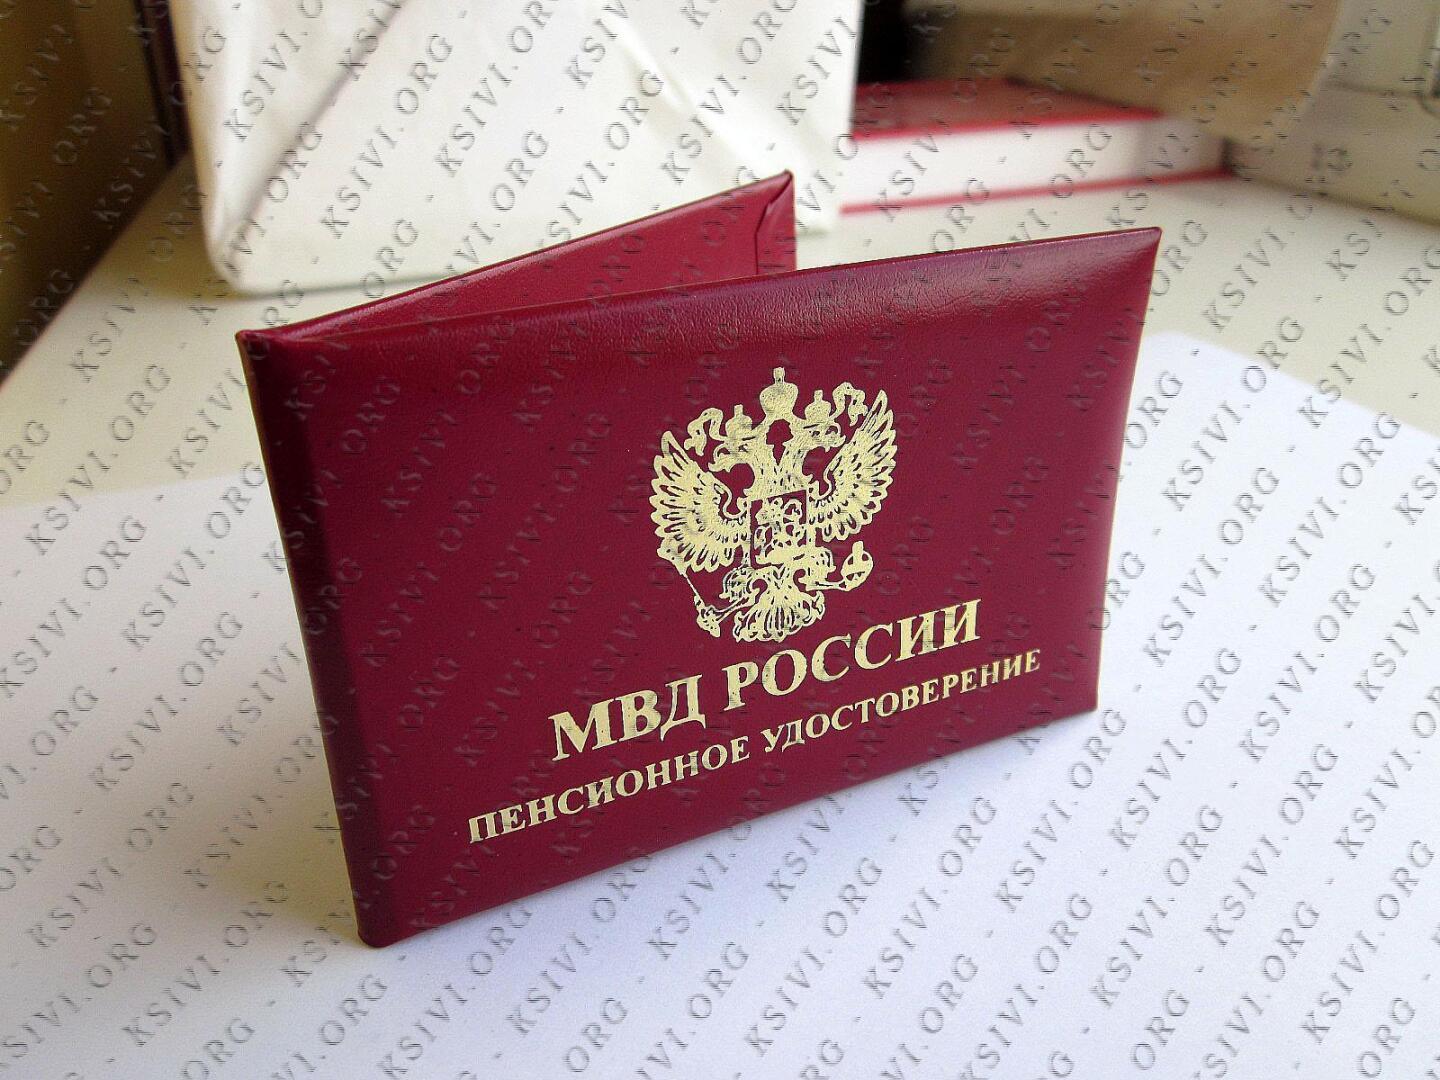 Пенсионное обеспечение сотрудников МВД России